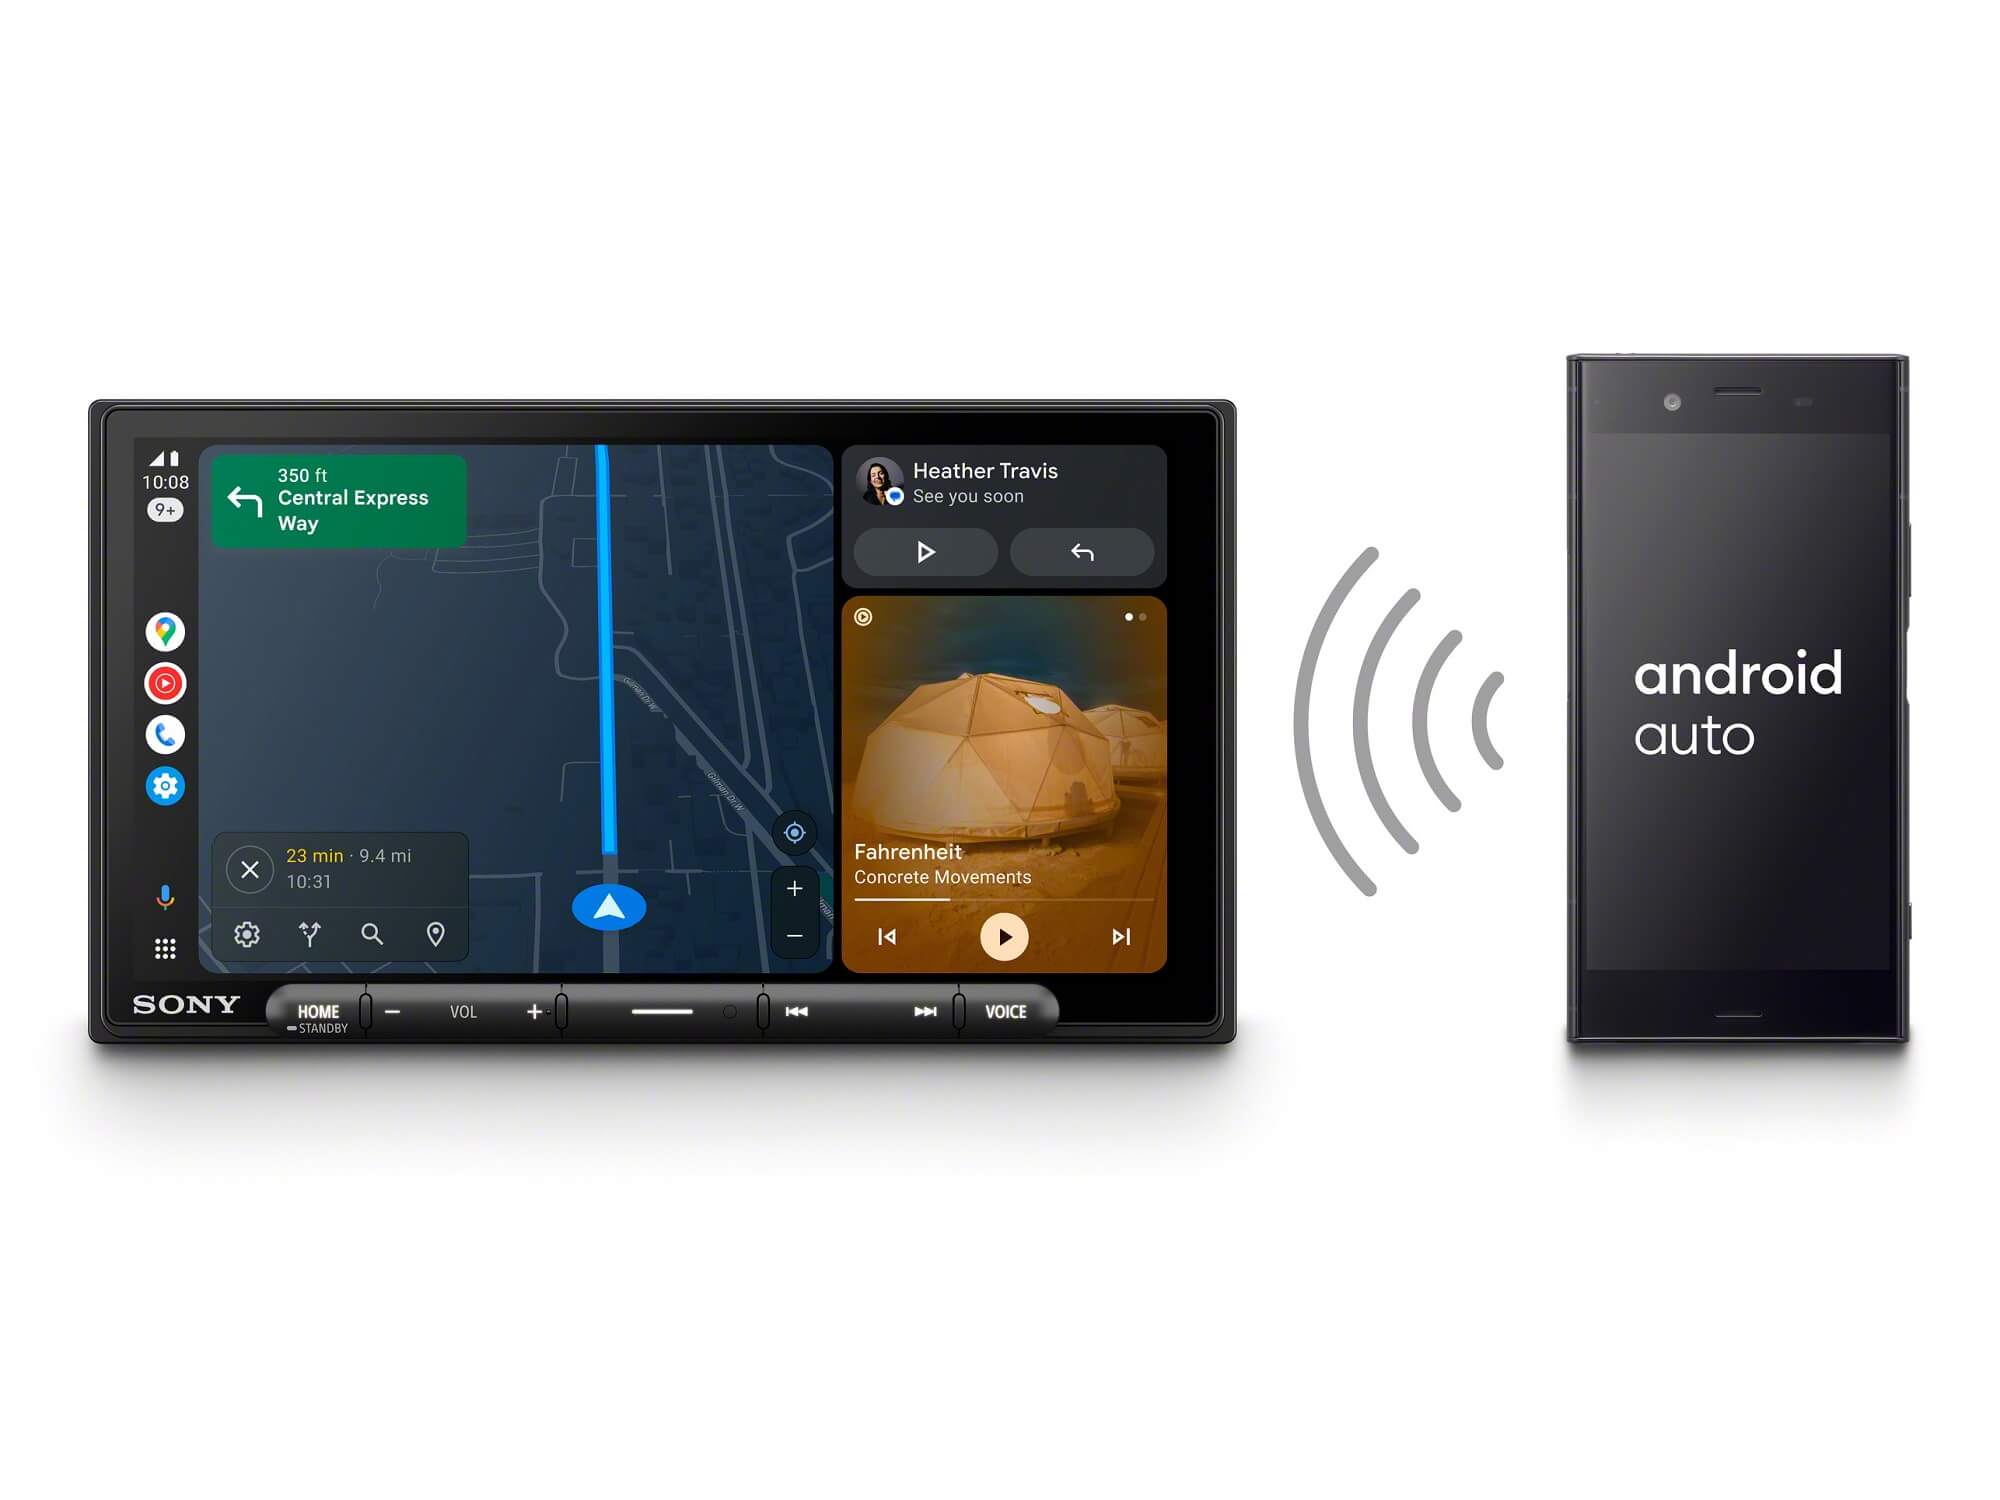 Sony XAV-AX6050 - Wireless Android Auto